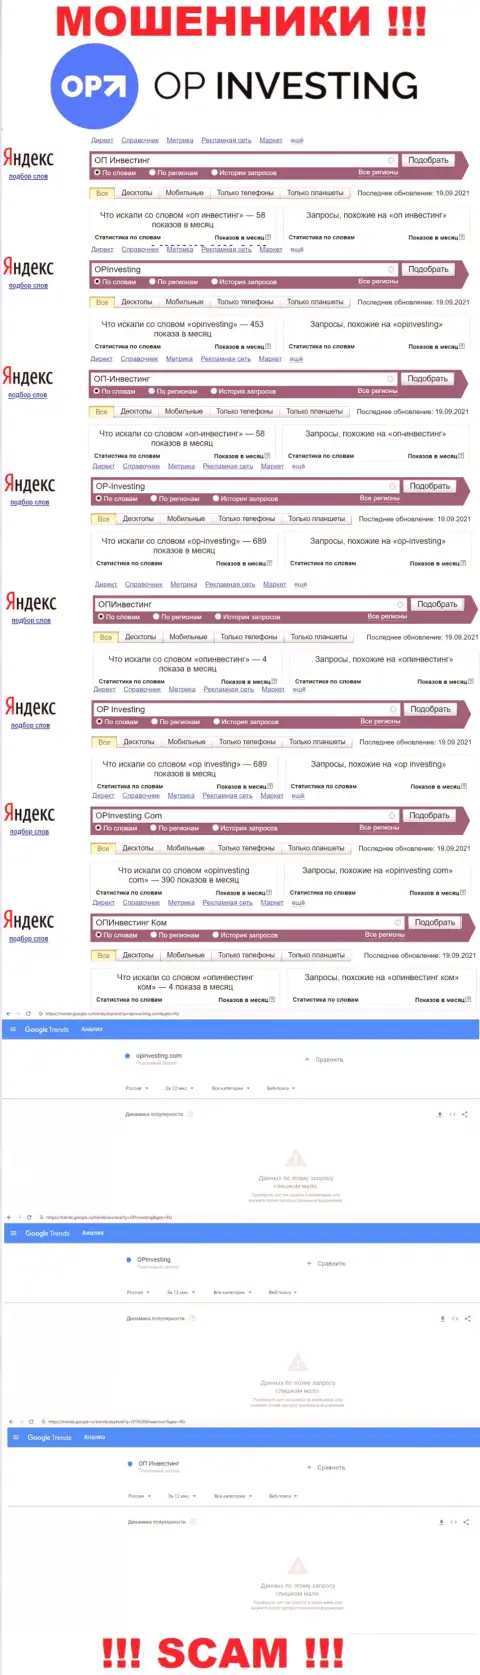 Количество поисковых запросов посетителями сети интернет материала о ворах ОПИнвестинг Ком